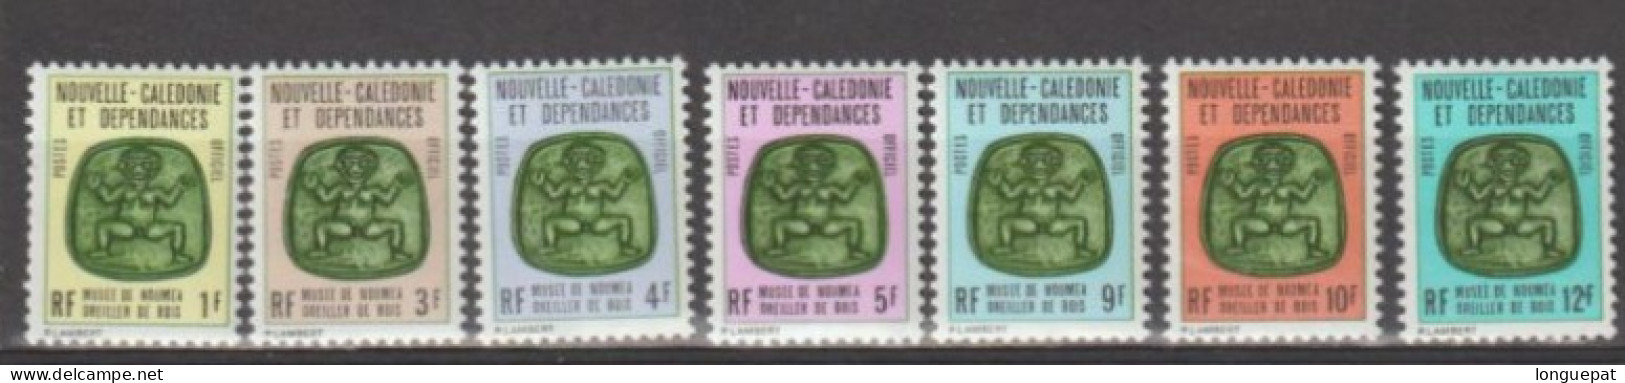 Nle Calédonie : Oreillers De Bois (Musée De Nouméa) - Service